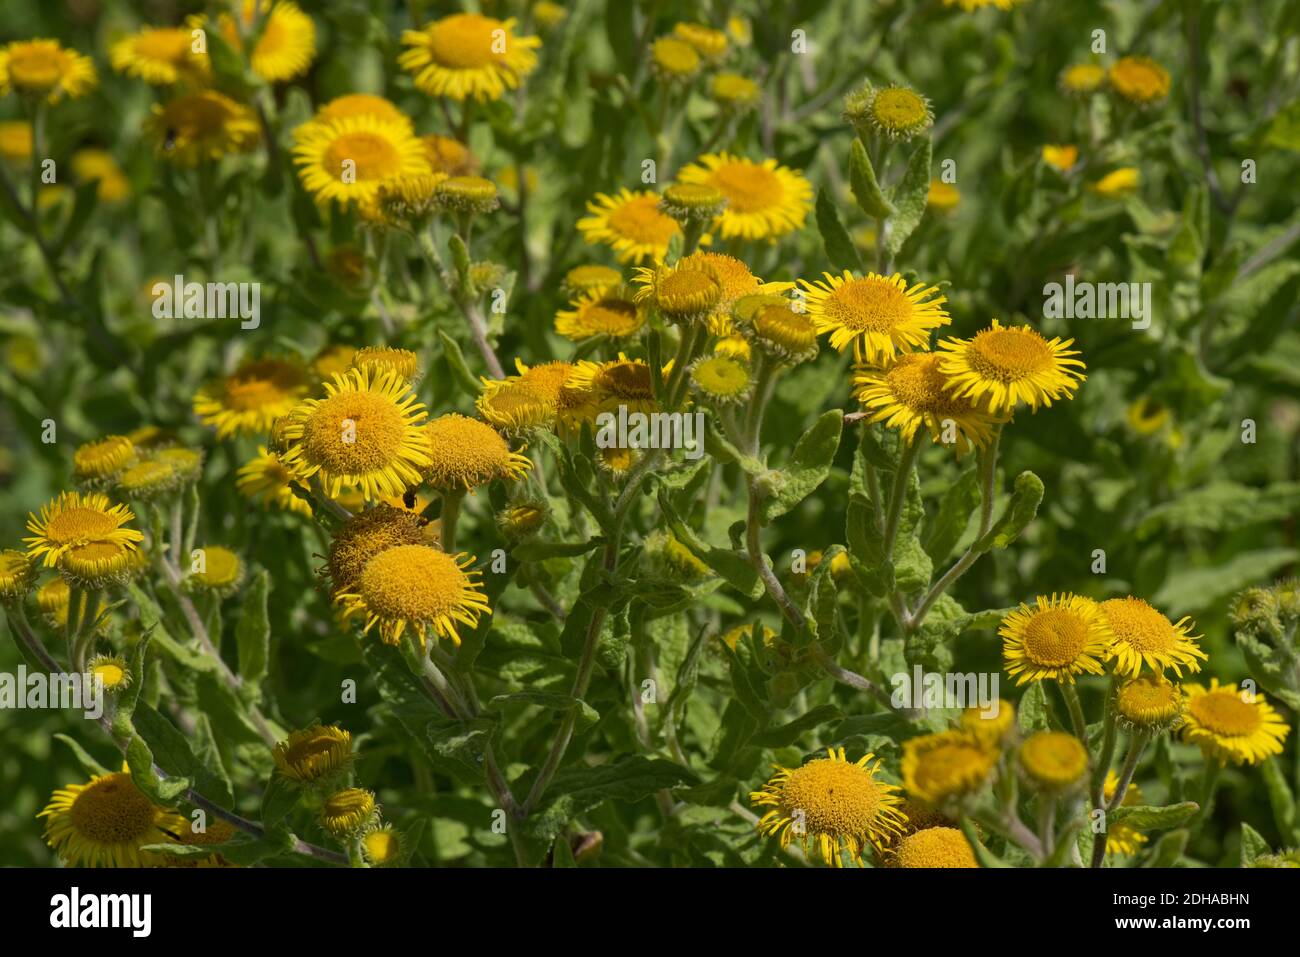 Comune fleabano (Pulicaria dissentenica) fiori compositi gialli di daisy-come pianta selvatica, Berkshire, agosto Foto Stock